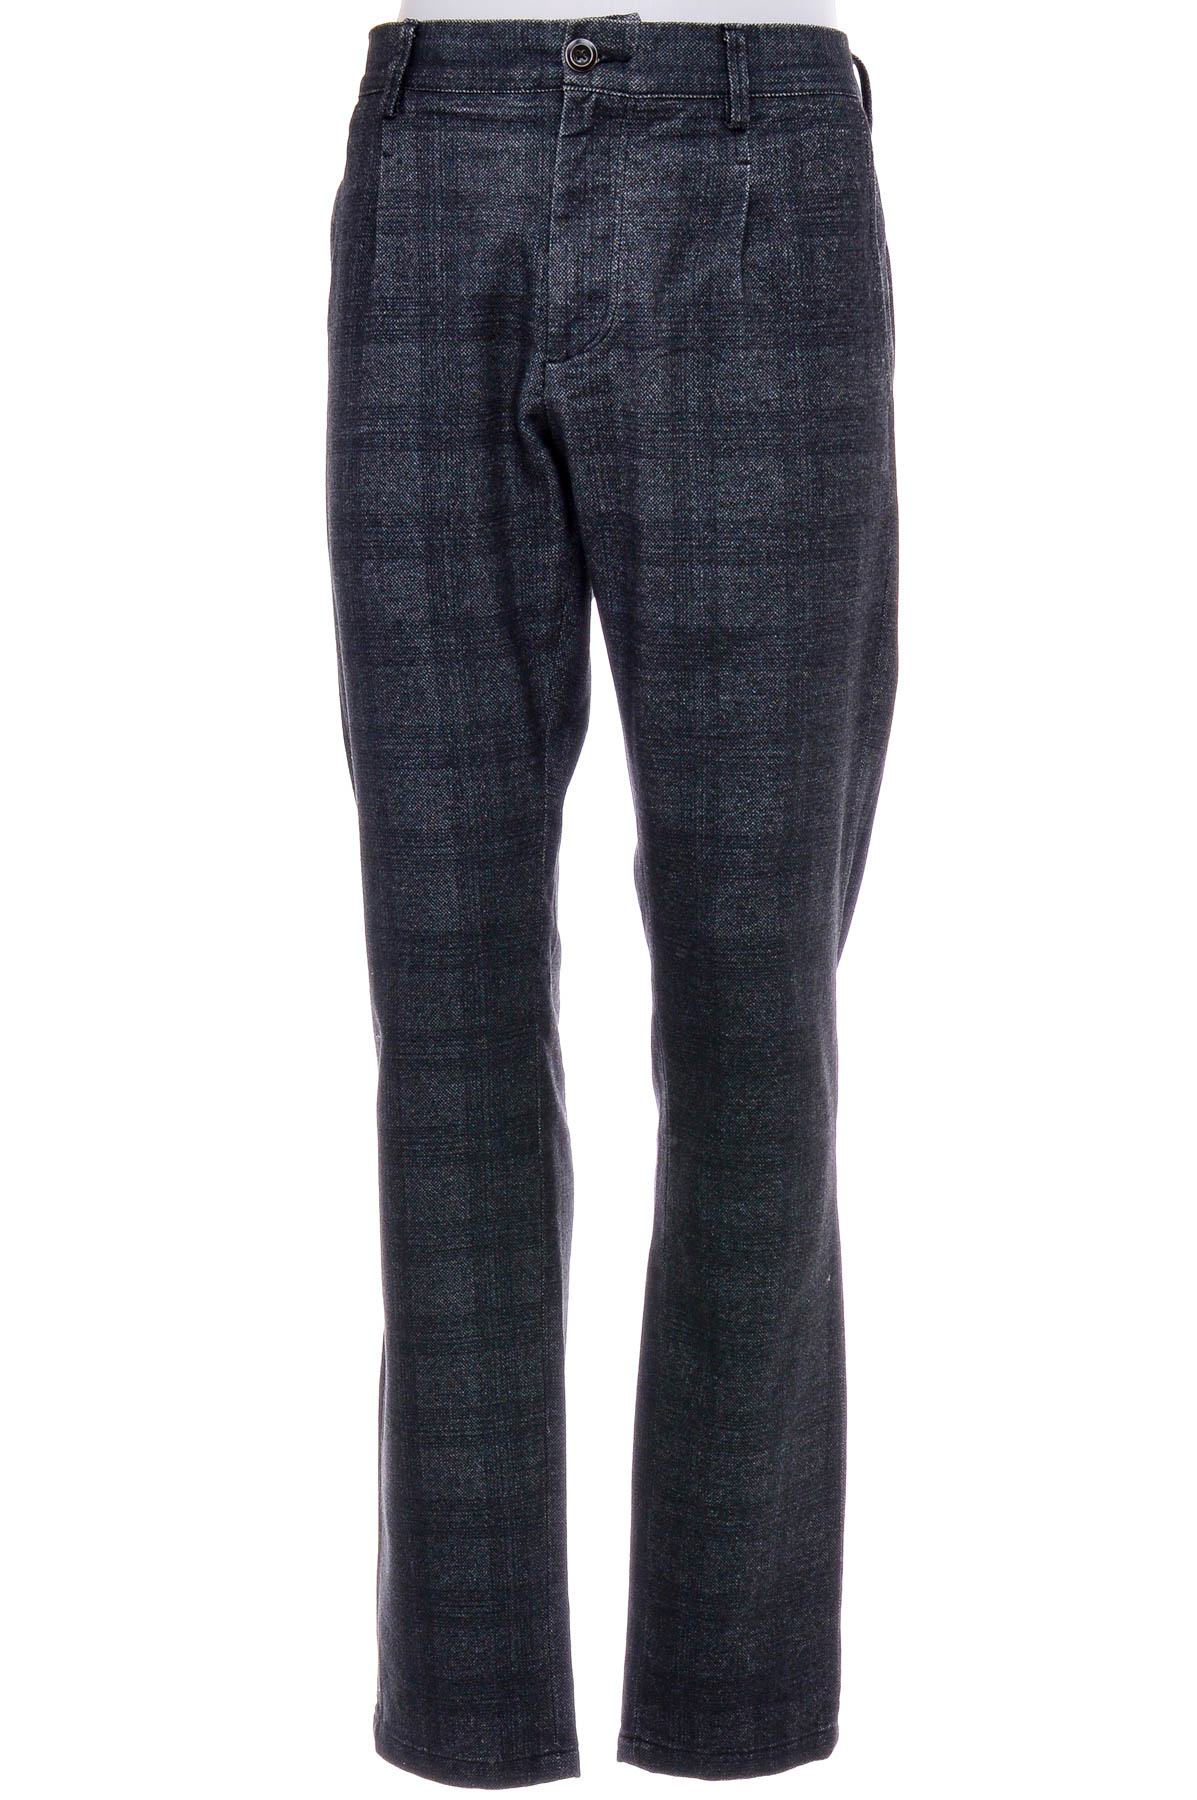 Men's trousers - DEVRED 1902 - 0